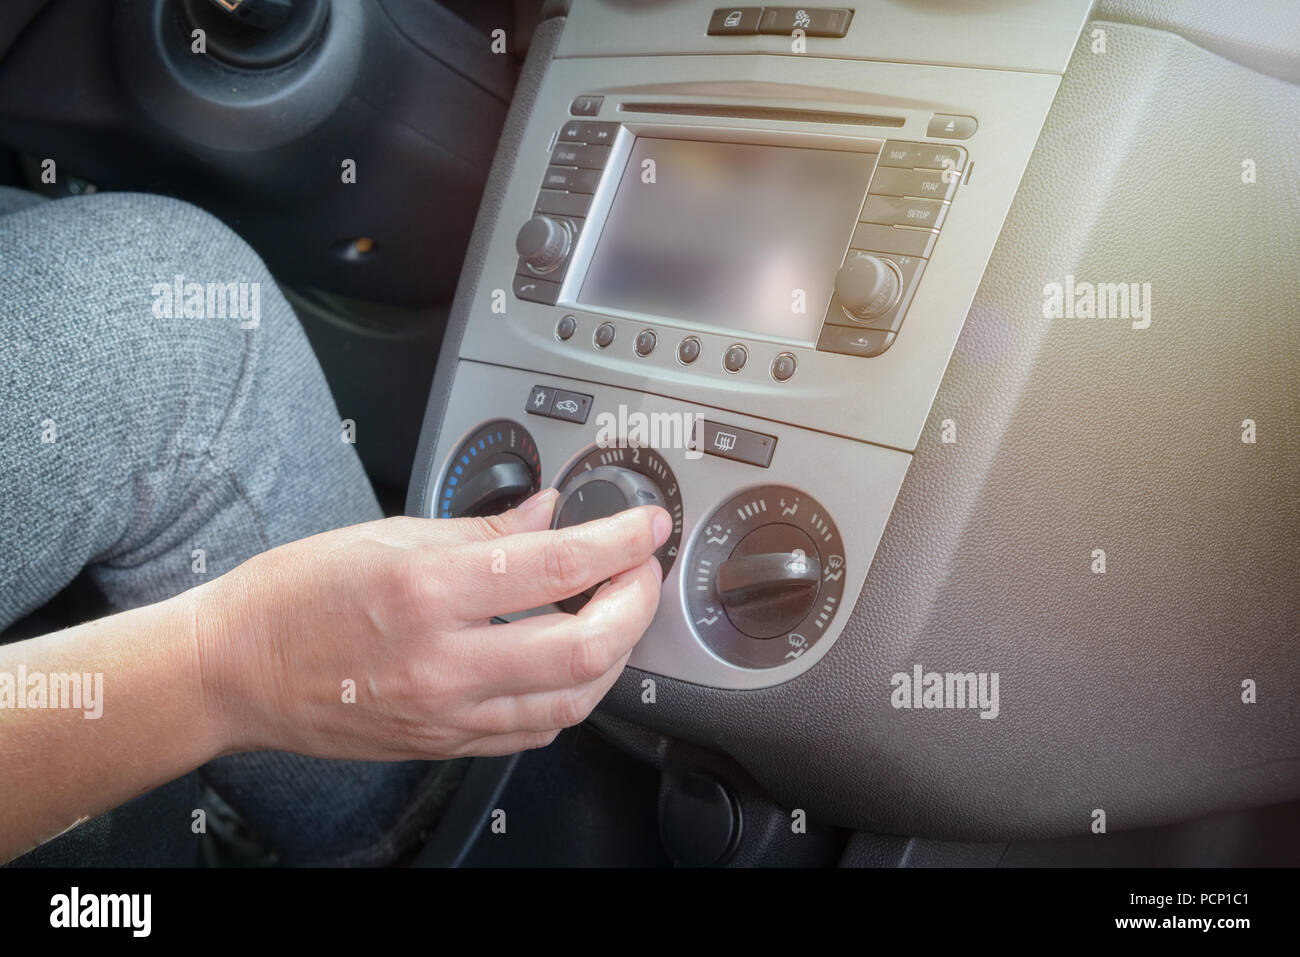 Treiber einstellen Auto Klimaanlage und Lüftung mit Wahlschalter  Gebläsedrehzahl Stockfotografie - Alamy